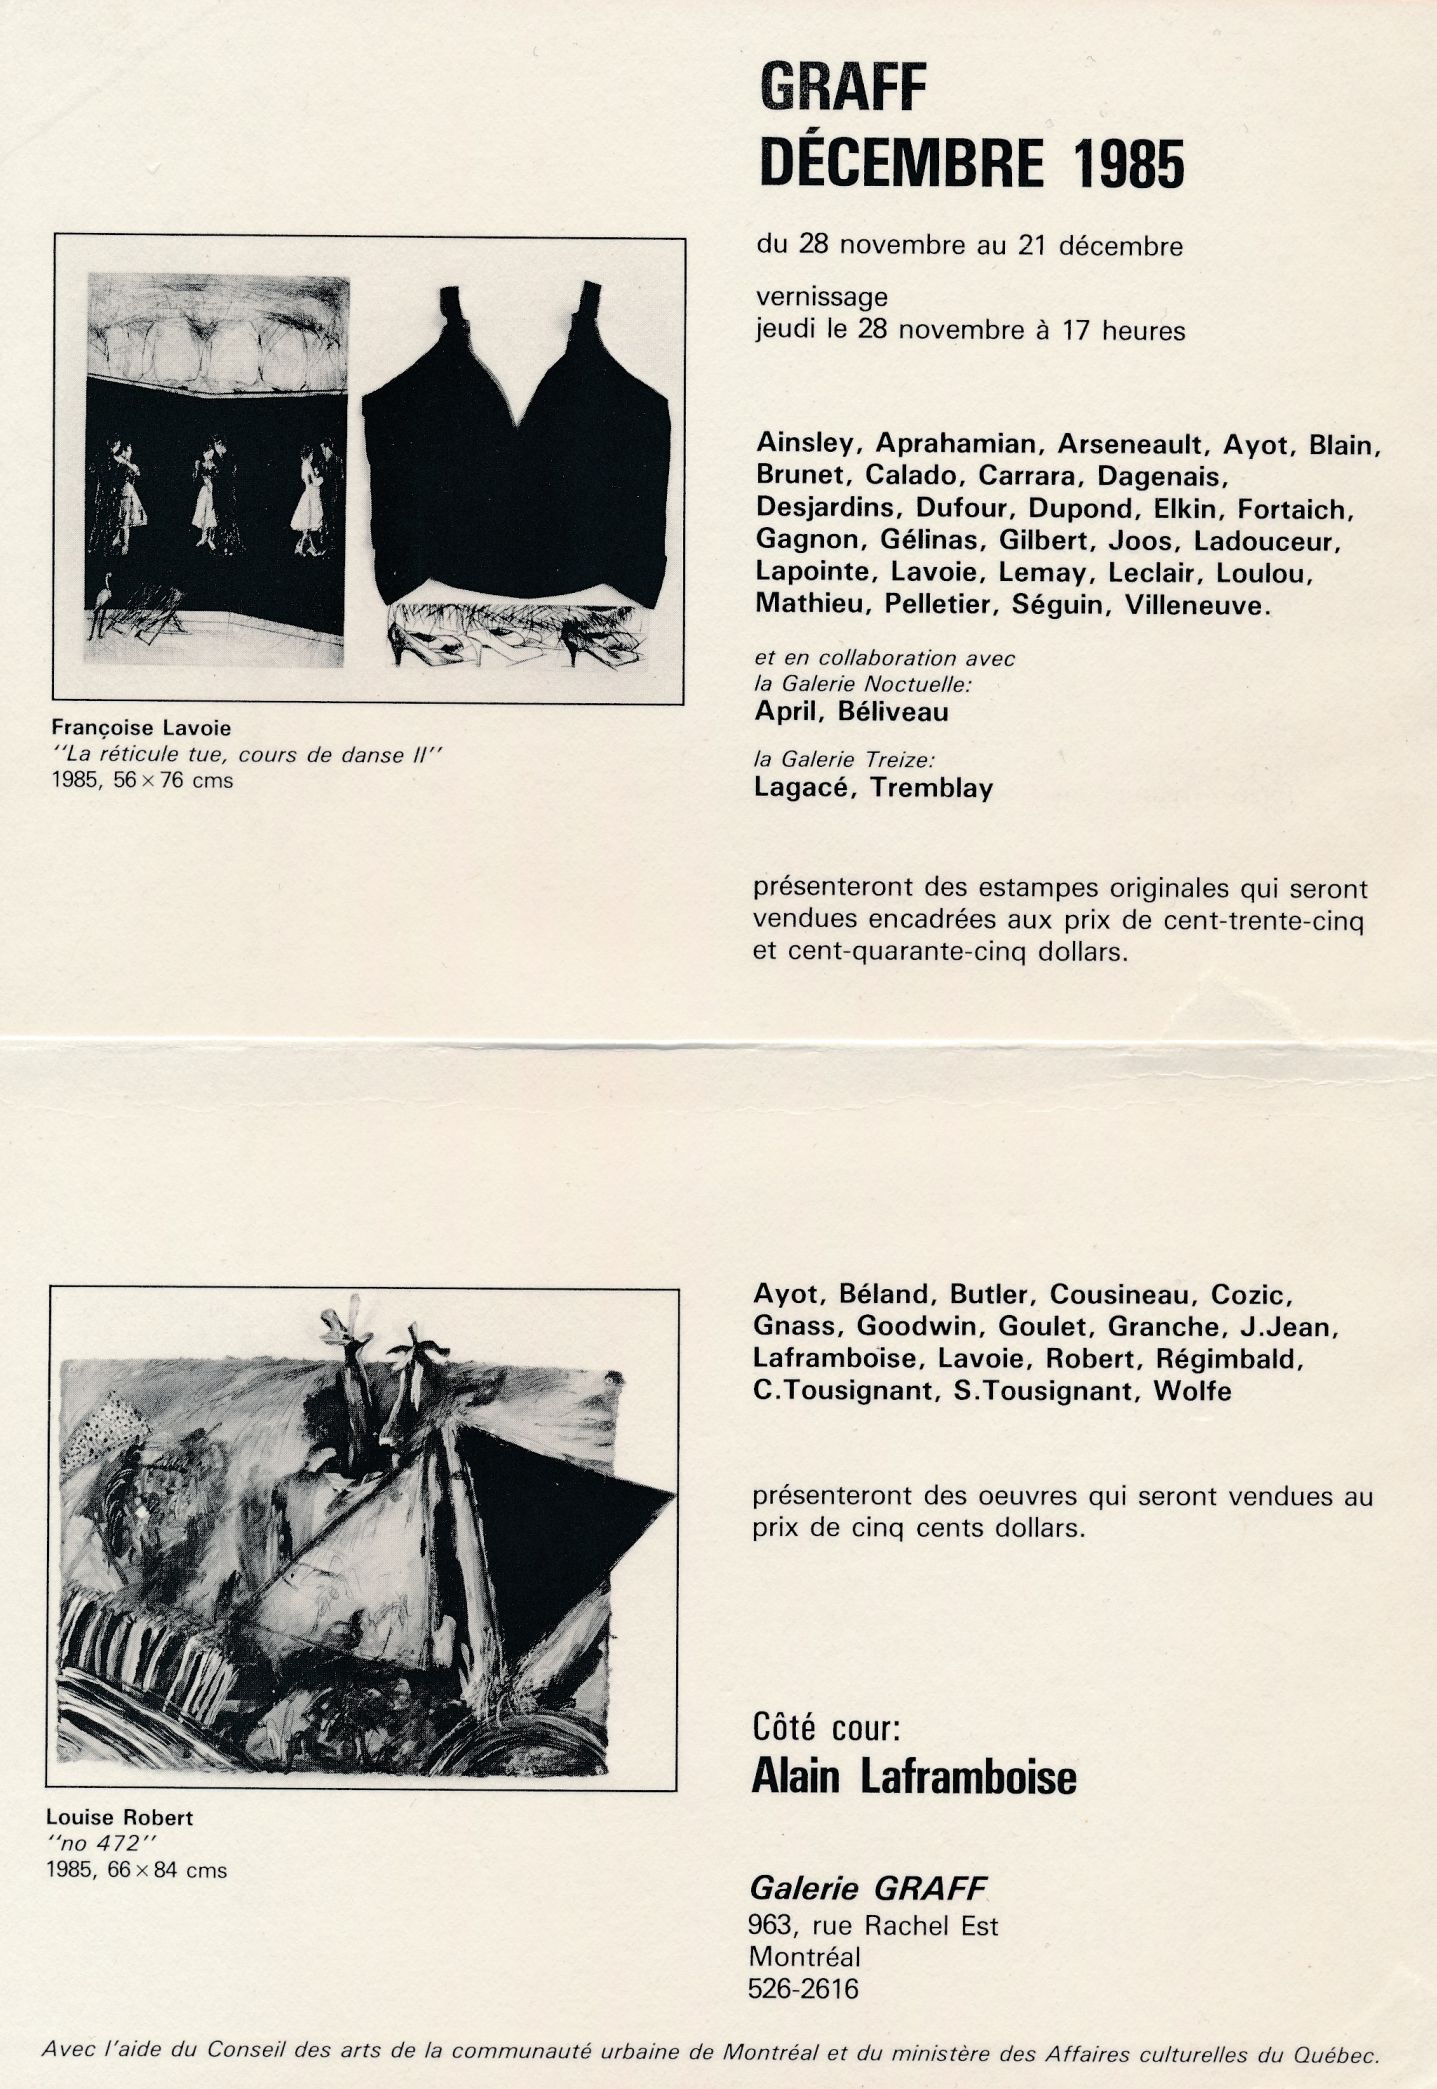 Carton d’invitation de l’exposition Graff. Décembre 1985, Galerie Graff, Montréal, 1985.